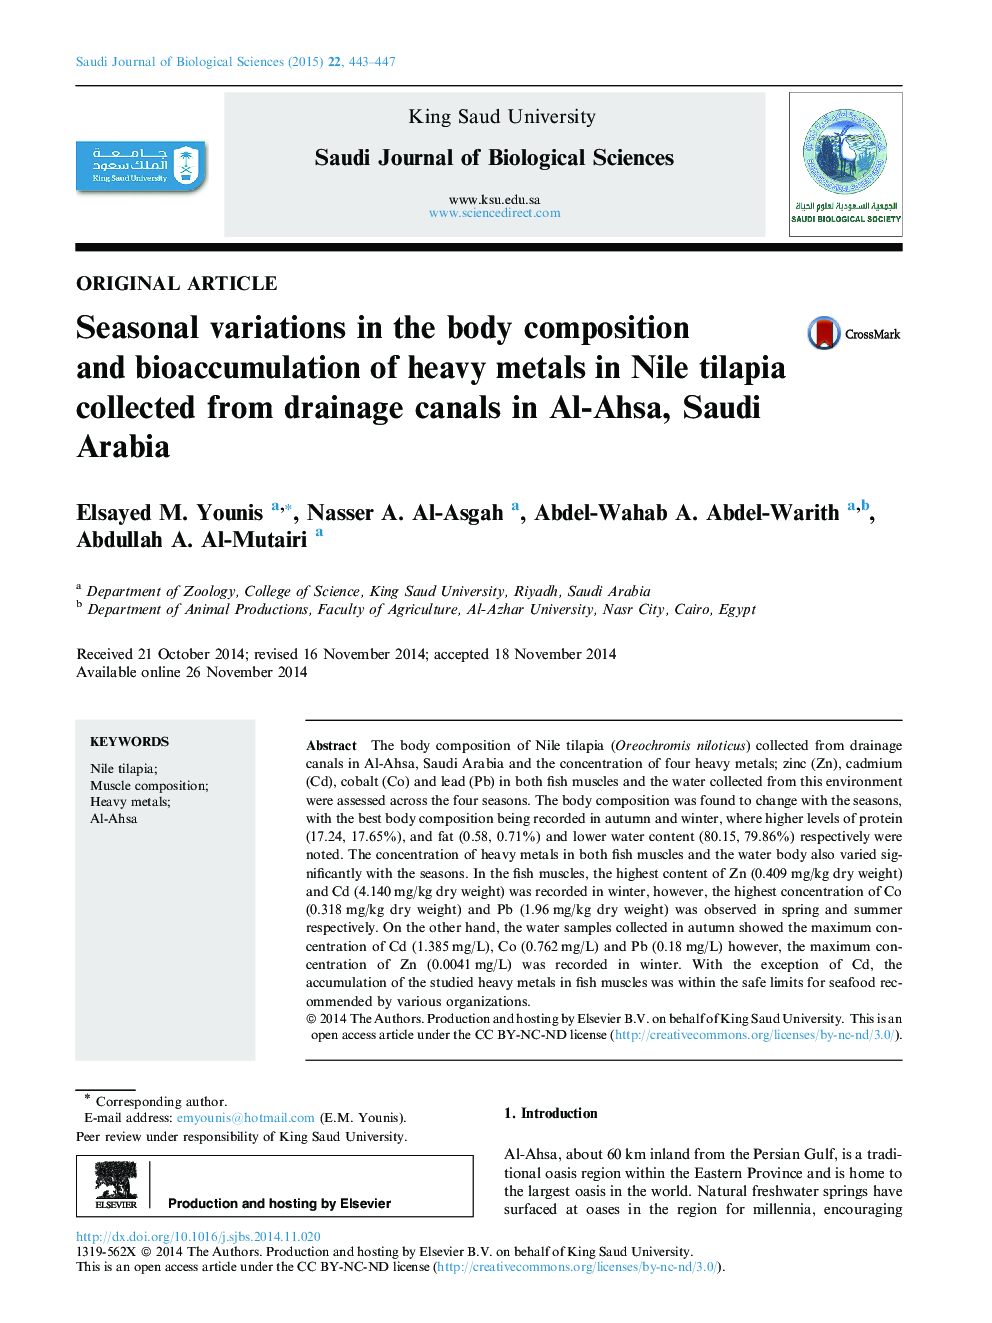 تغییرات فصلی ترکیب بدن و ذخیره زیستی فلزات سنگین در تیلایپی نیل از کانال های زهکشی در الاهاسه، عربستان سعودی 